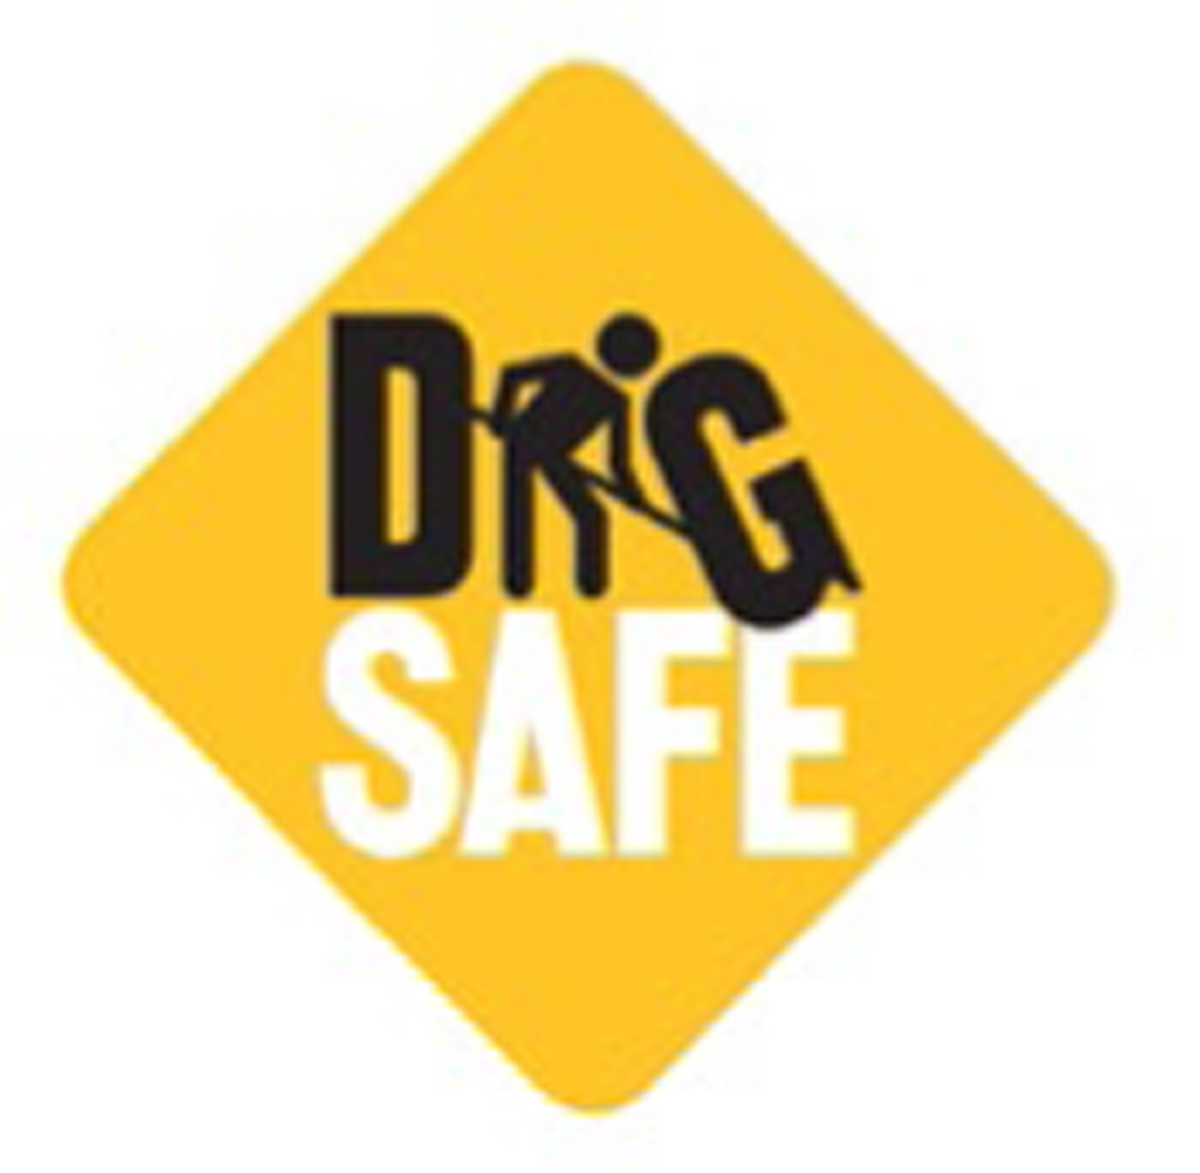 Dig Safe logo